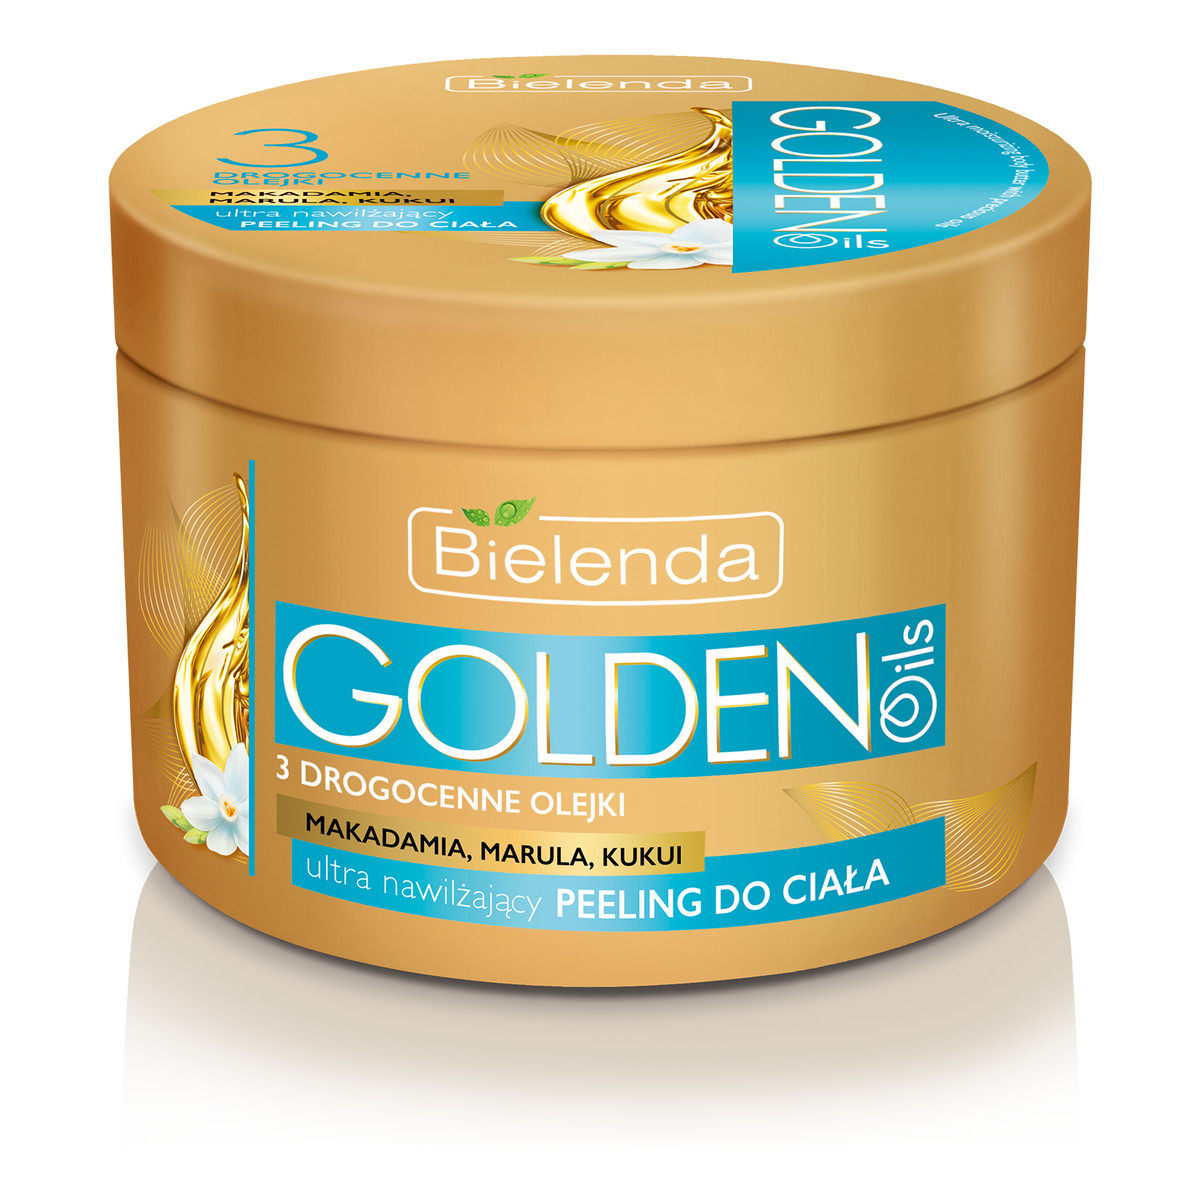 Bielenda Ultra Nawilżenie Golden Oils Ultra Nawilżający Peeling Do Ciała z Drogocennymi Olejkami 200g